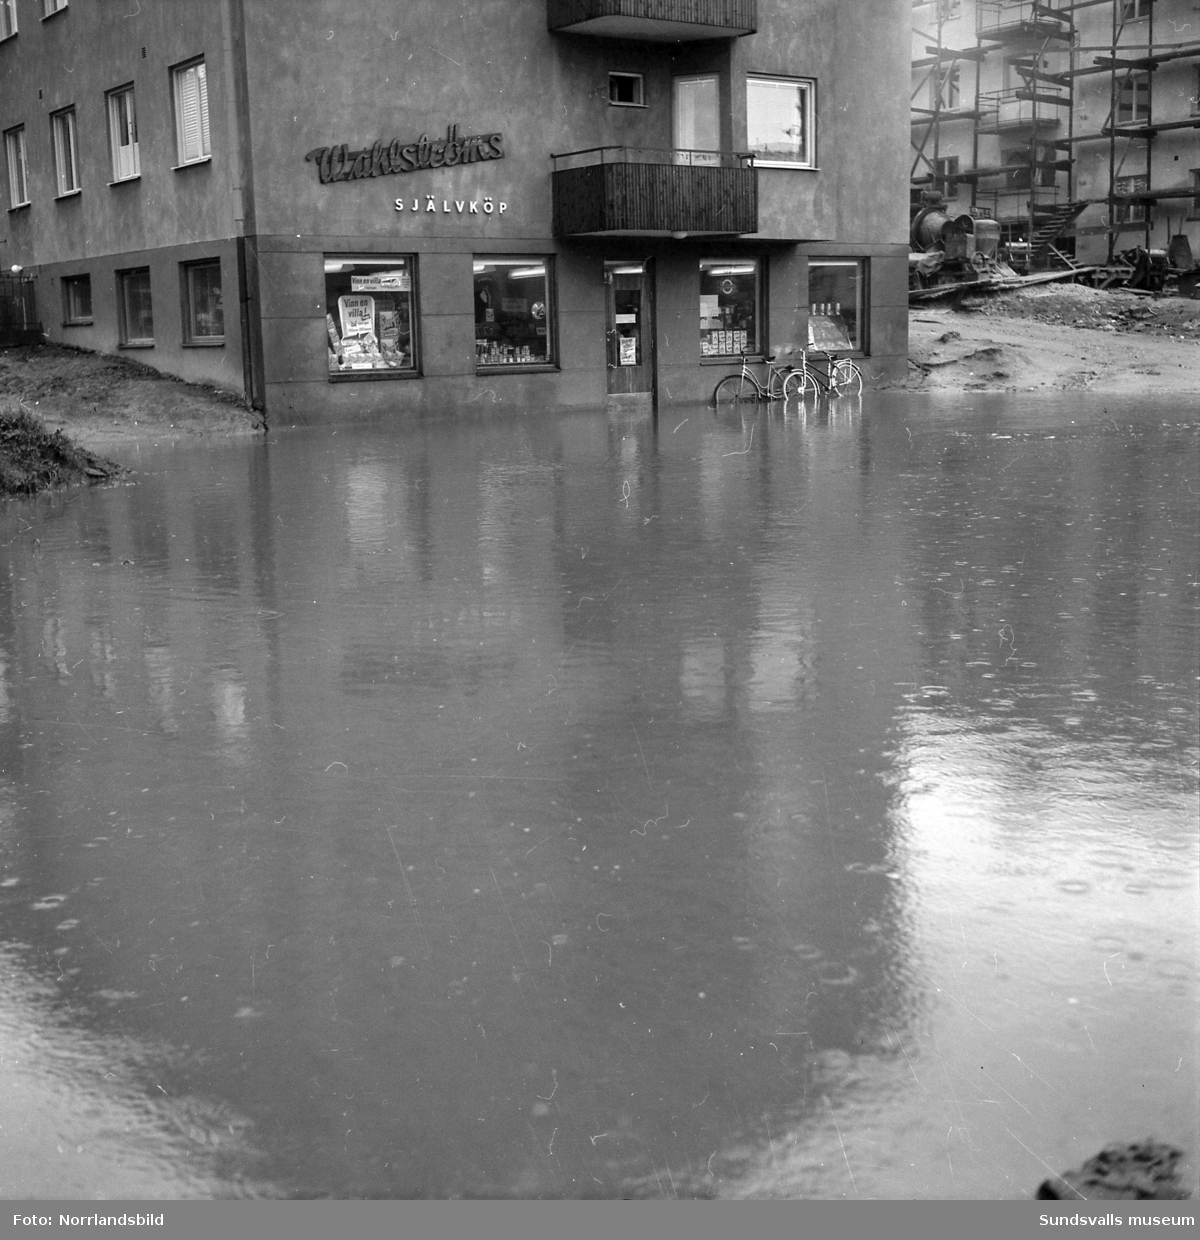 Översvämningar i Sundsvall, de flesta bilderna från Björneborgsgatan 11-24 samt Grevenbäcken som svämmat över. Wahlströms självköp och Städernas Vakt AB har råkat illa ut och källarvåningarna i flerfamiljshusen är drabbade. Vid Aluminiumkompaniet har en översvämmad bäck skurit av landsvägen och bildat ett vattenfall. På en av bilderna ses fyra män leta efter en avloppstrumma i Grevebäcken stånde dels i en båt och dels på en omkullvräkt arbetarkur. Det är förman Jonsson, E. Forsberg, G. Persson och A. Söderman.